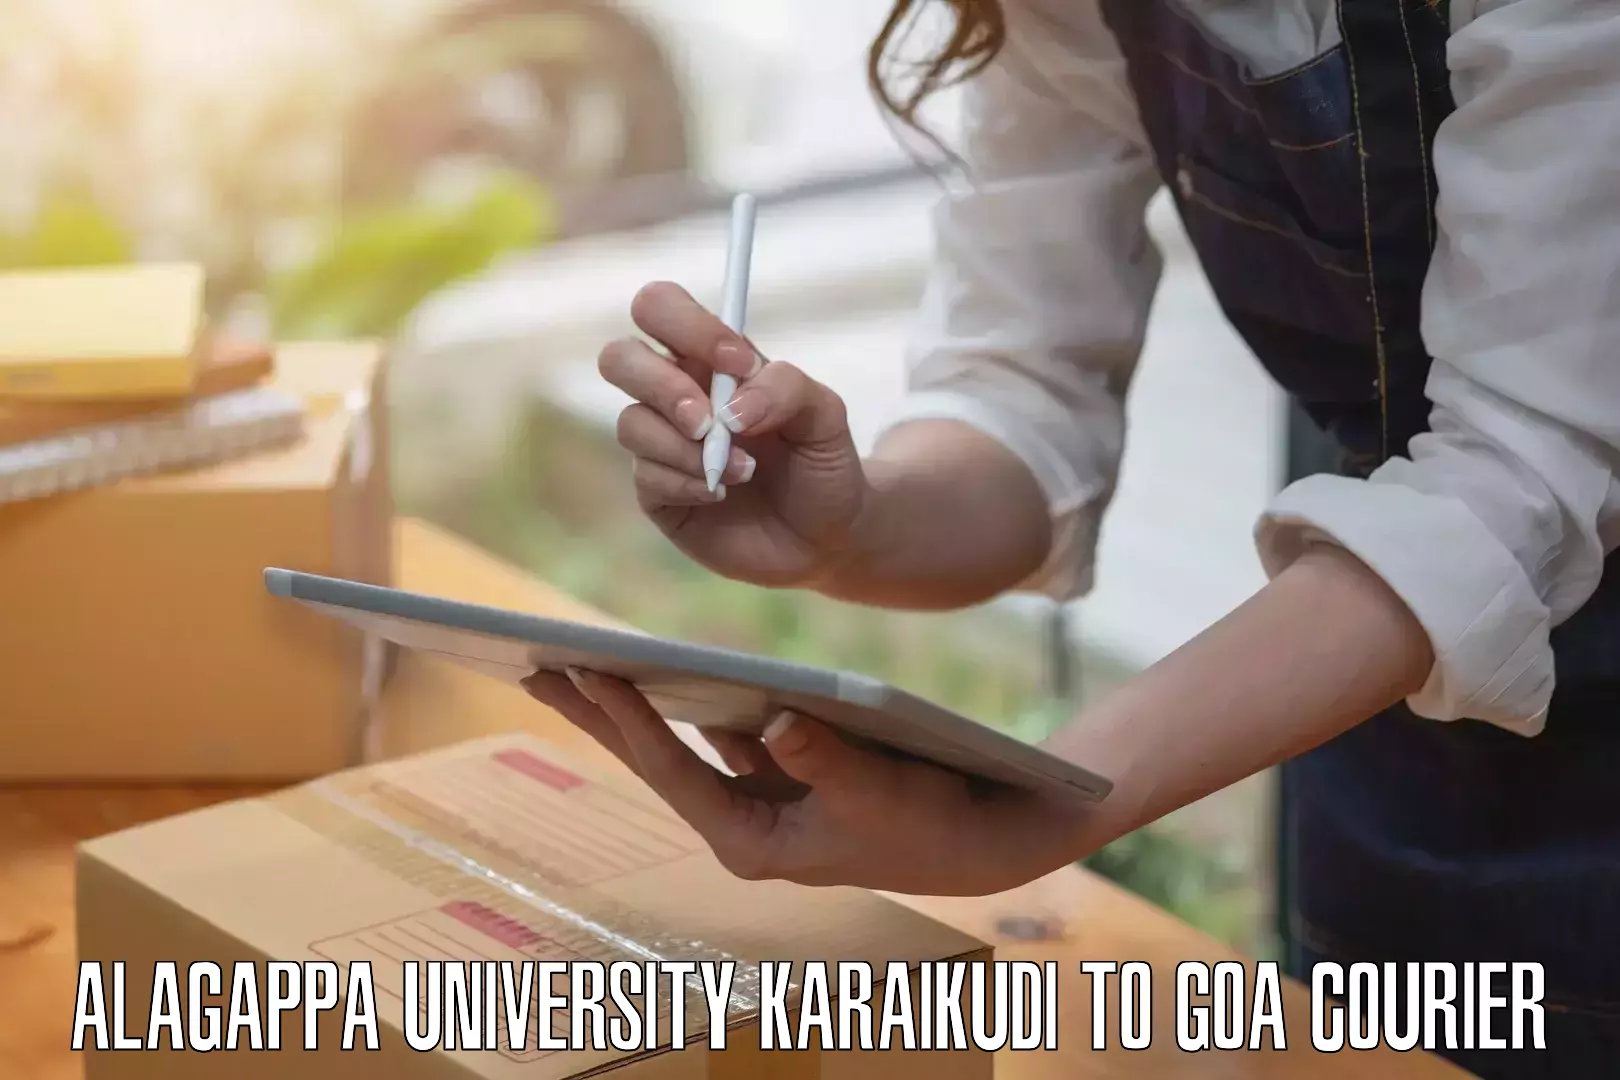 Baggage transport logistics Alagappa University Karaikudi to IIT Goa